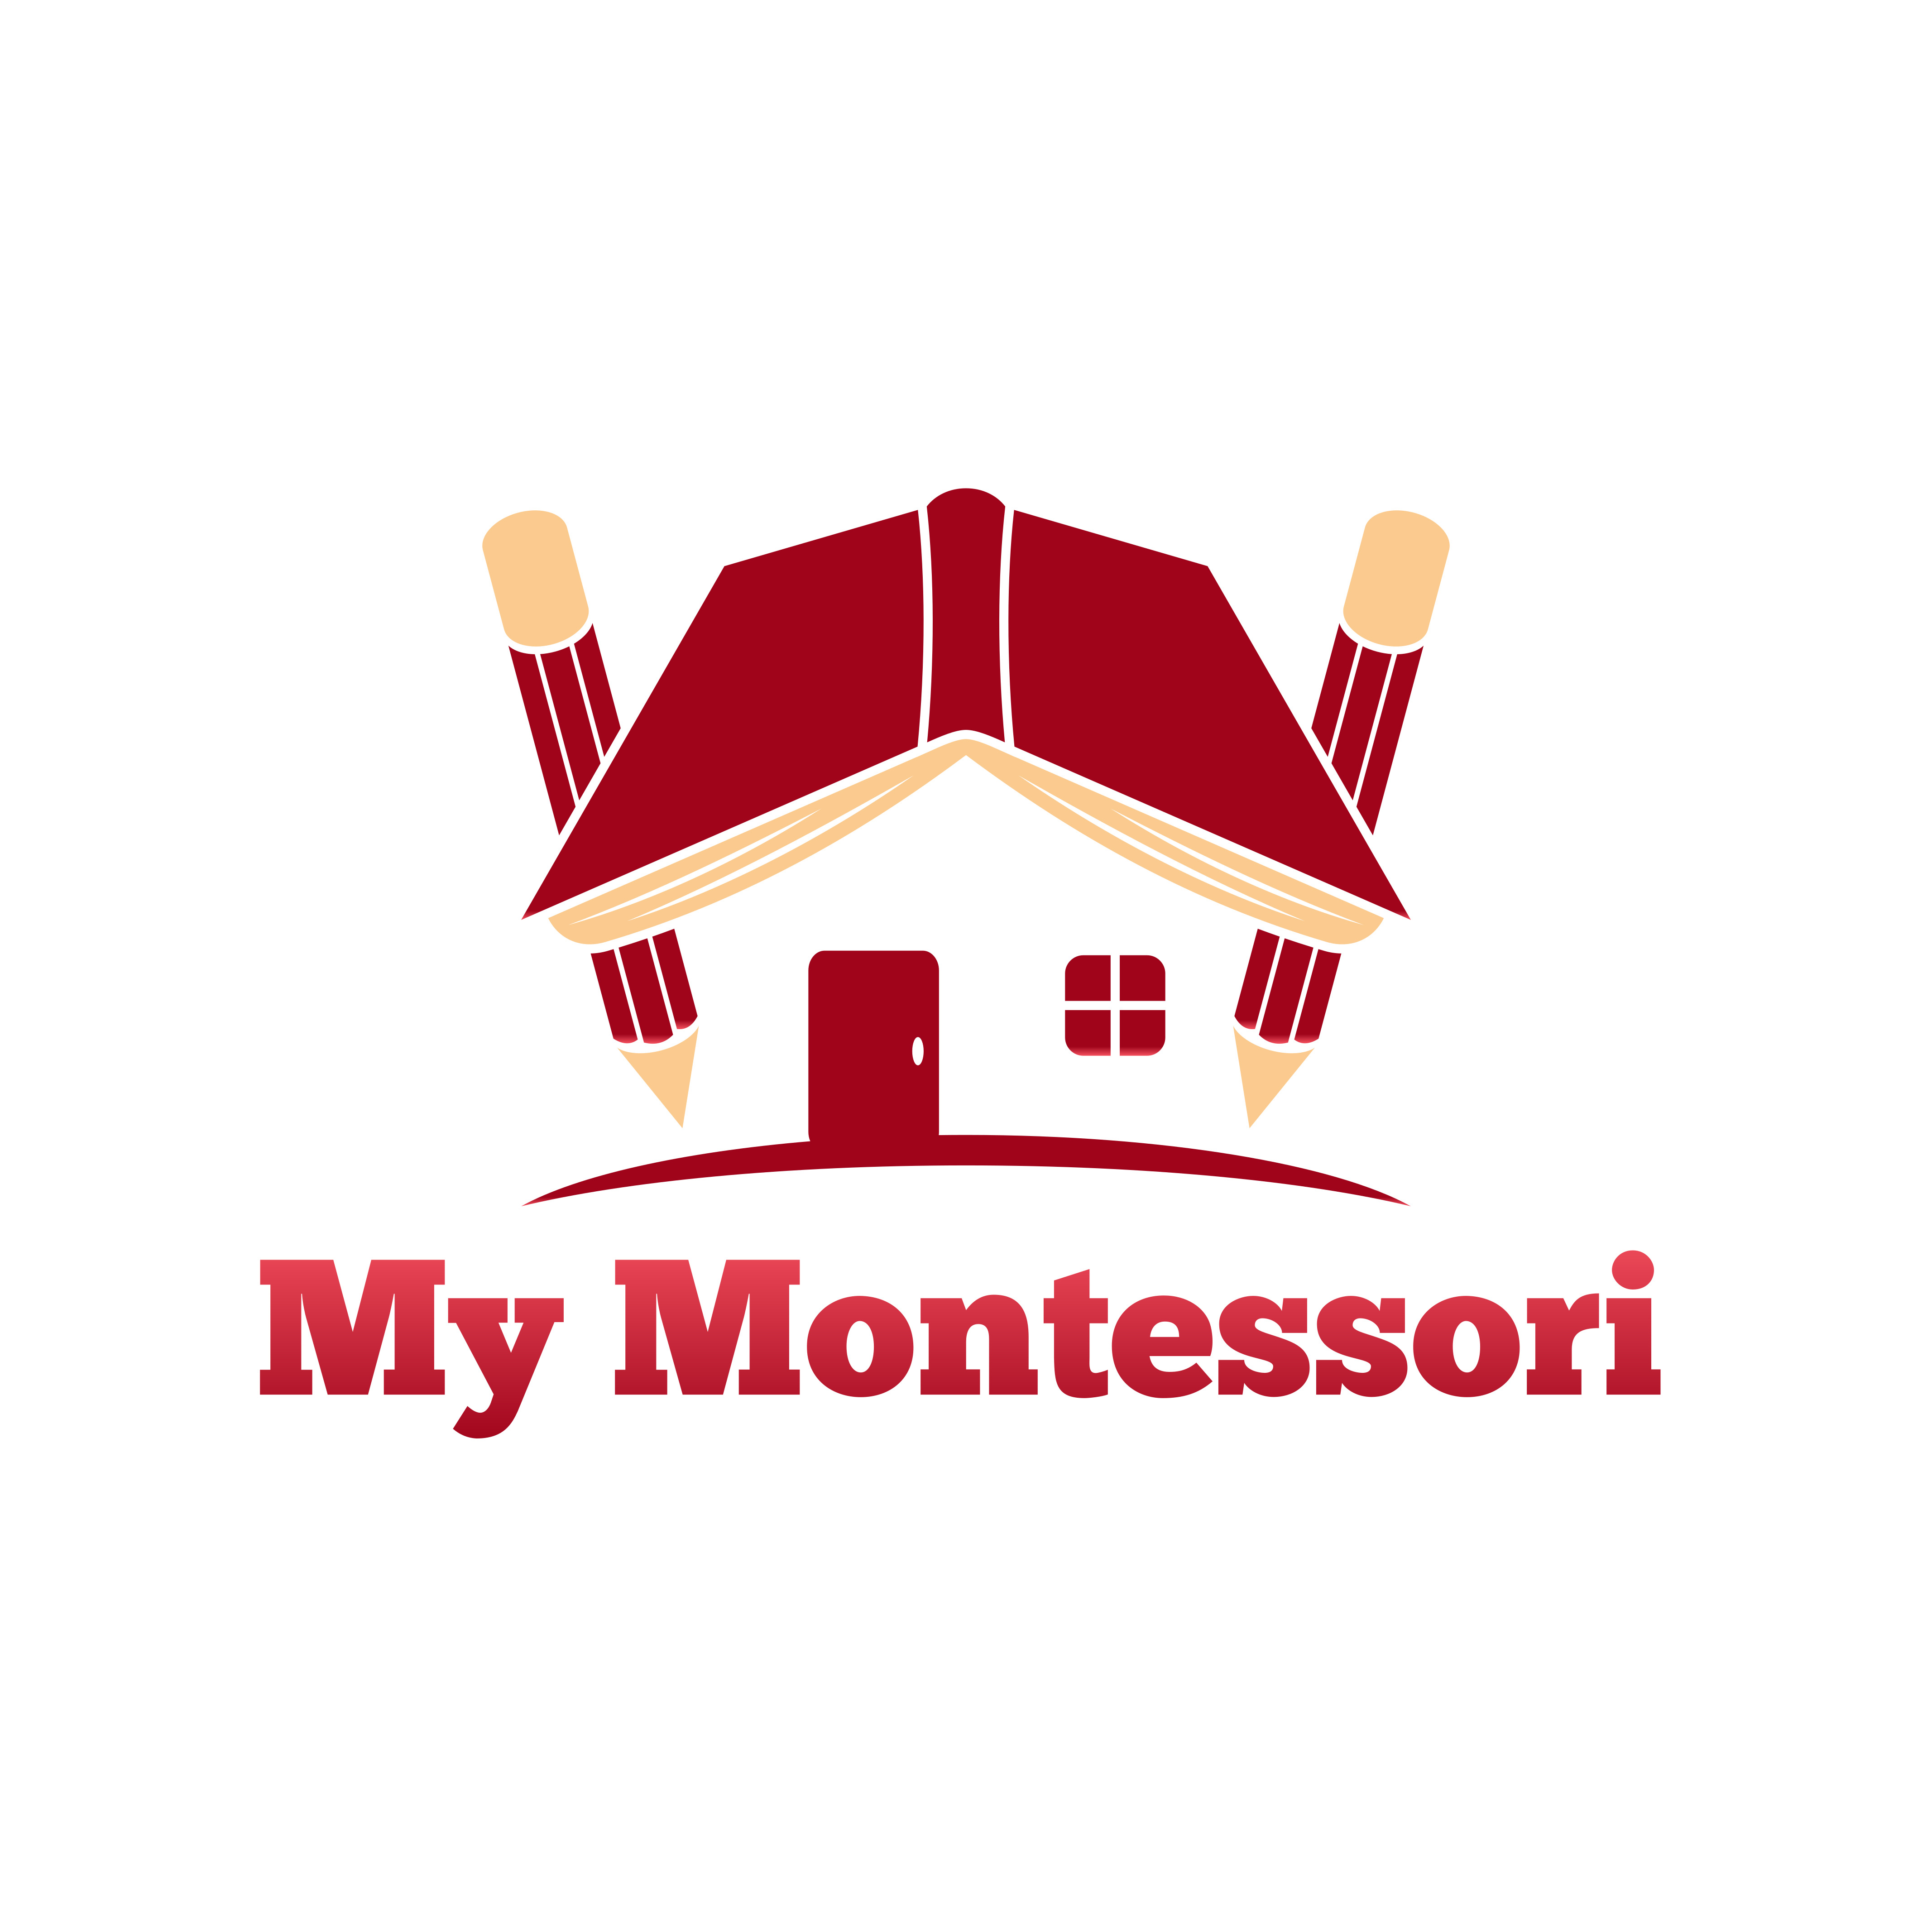 My Montessori